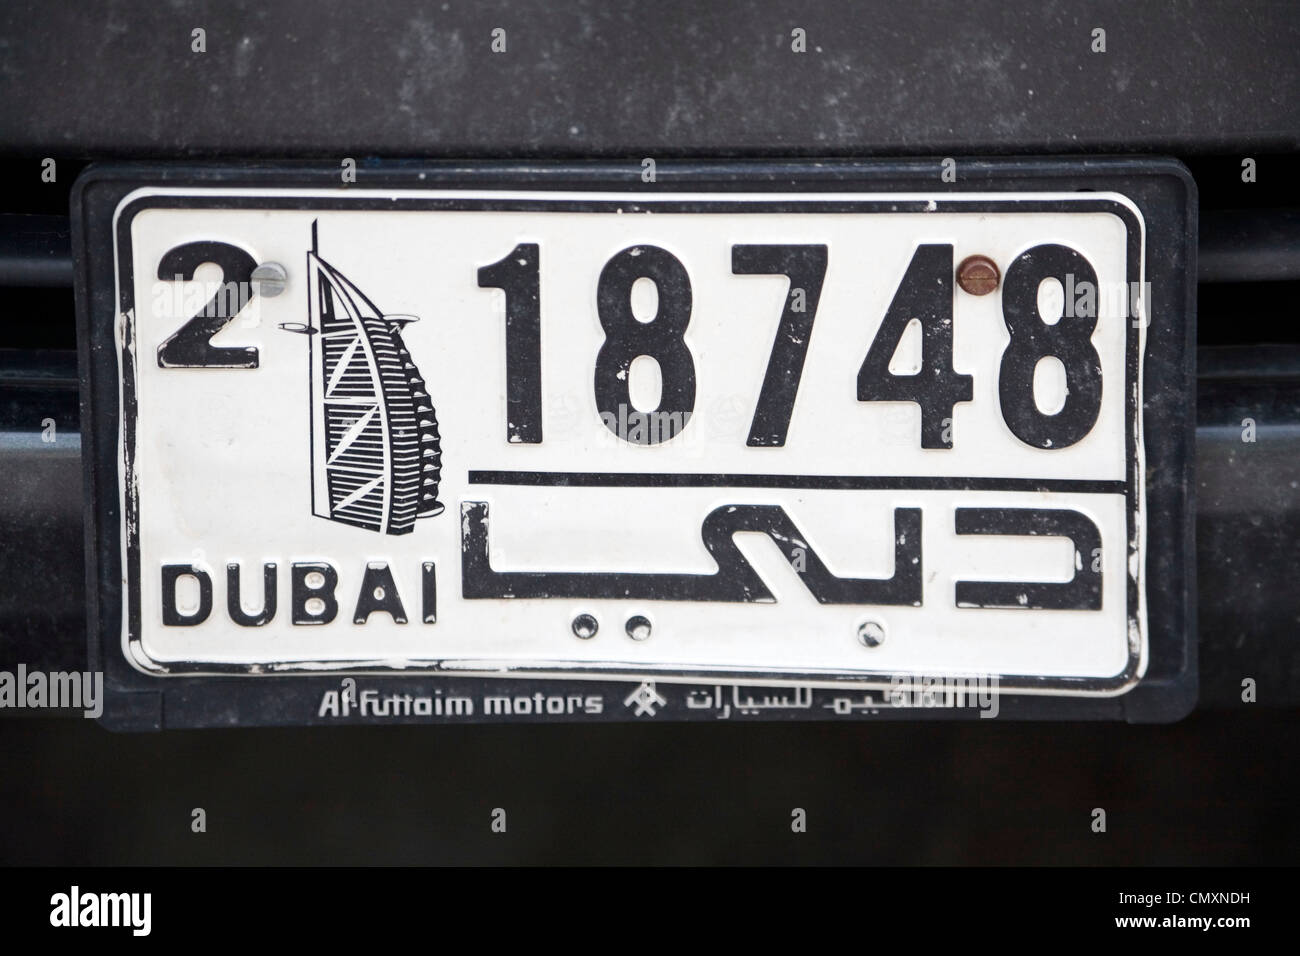 Dubai numero di targa Porsche Cayenne Foto Stock